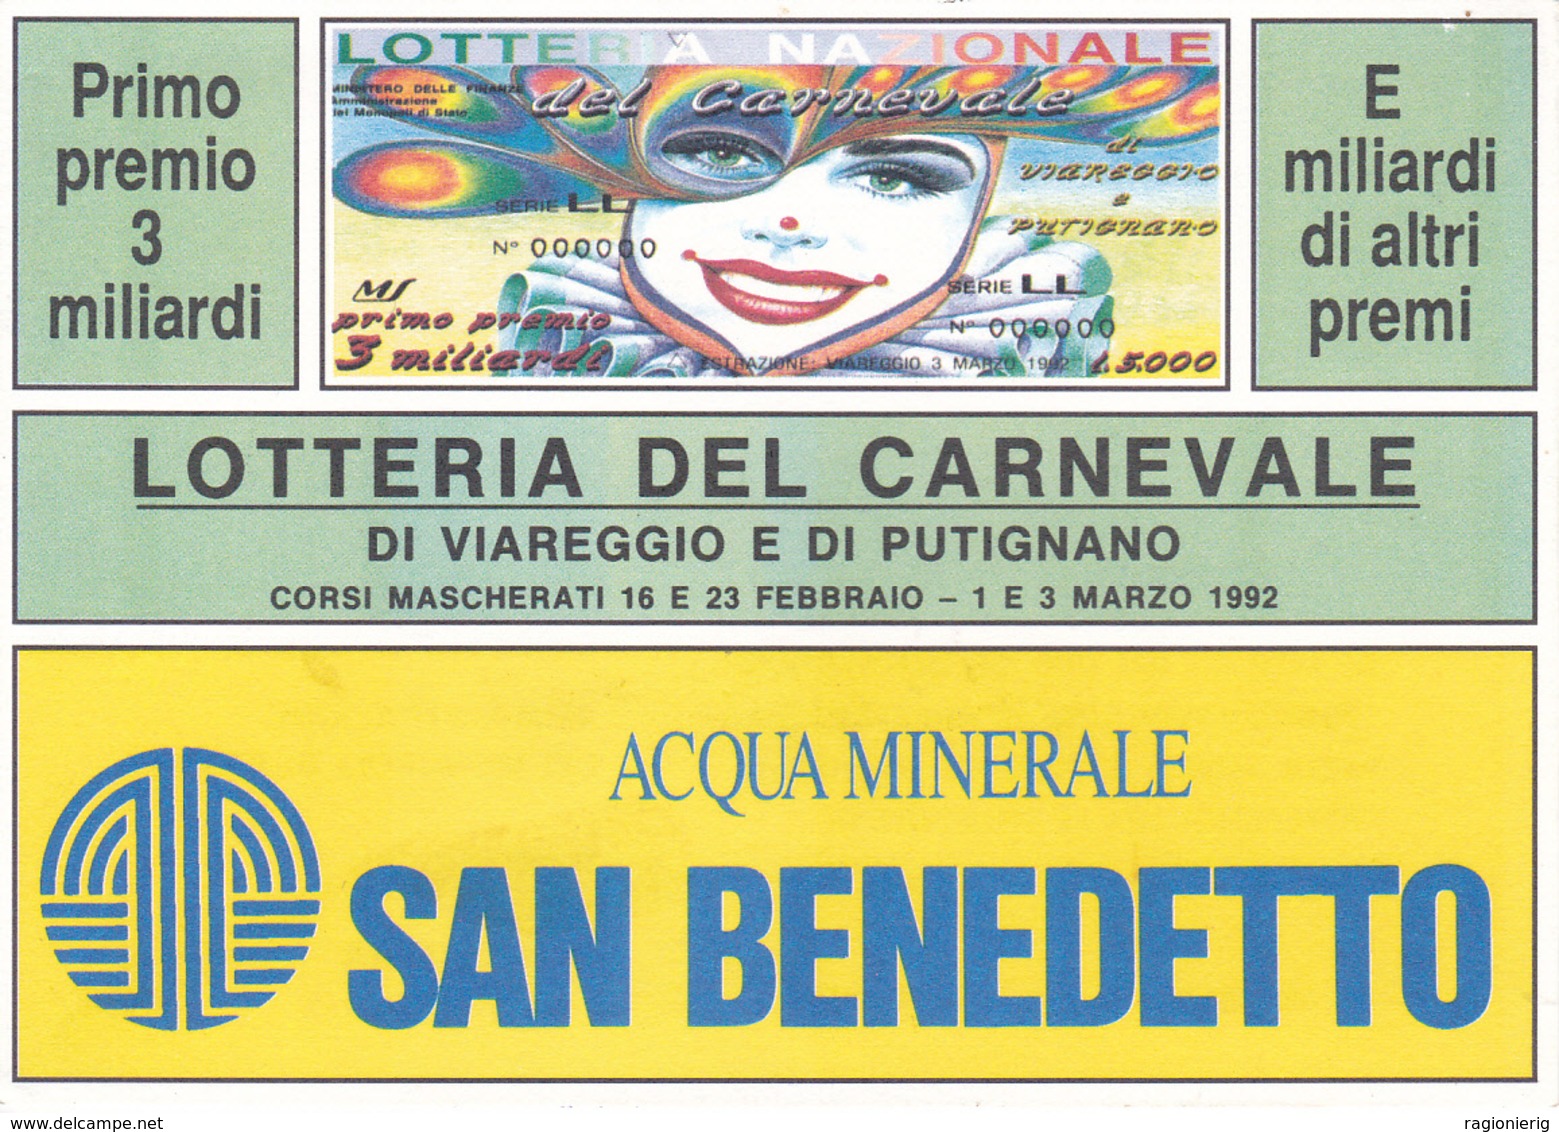 VIAREGGIO - Cartolina Della Lotteria Del Carnevale Di Viareggio E Di Putignano1992 - Acqua Minerale S.Benedetto - Viareggio